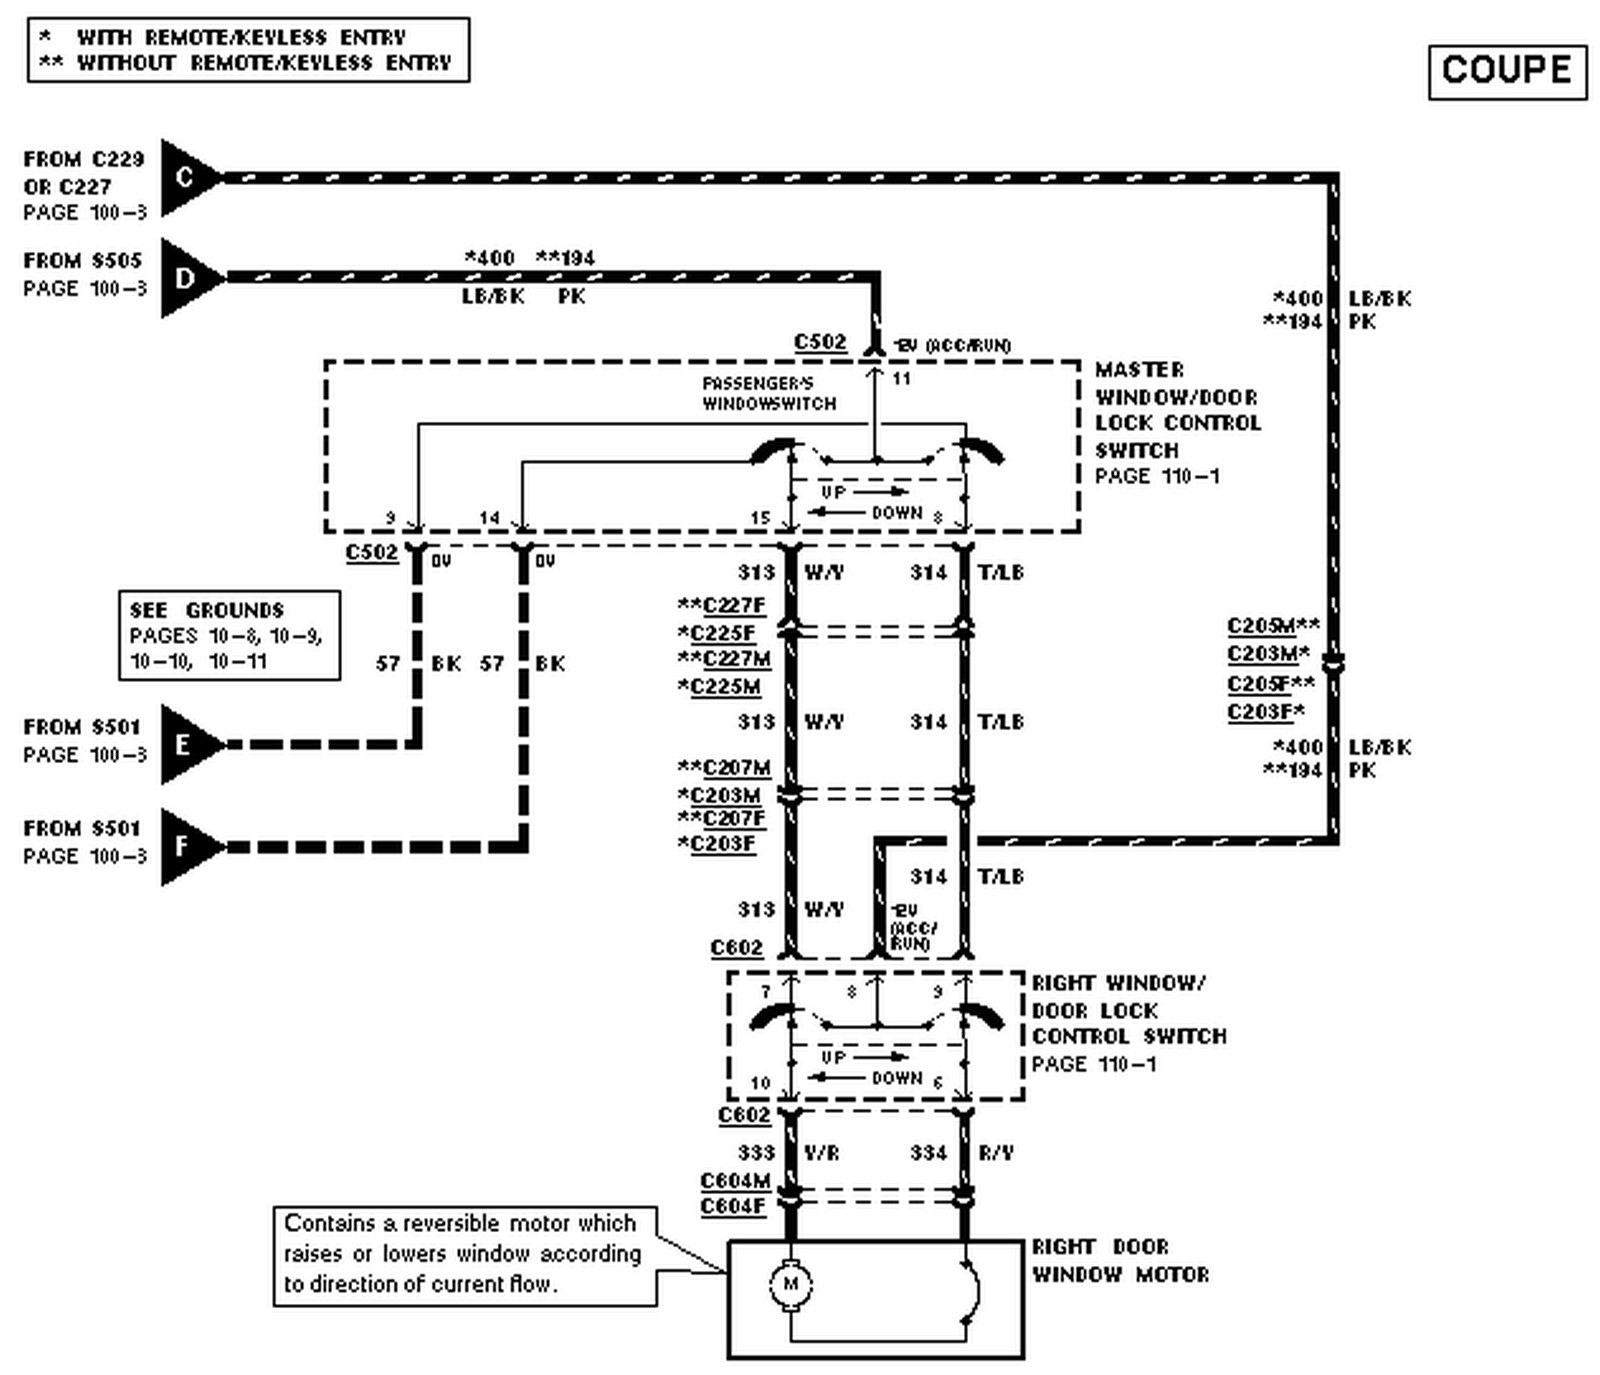 Toyota Power Window Switch Wiring Diagram Power Window Wiring Diagram Pdf Schematics Wiring Diagrams • Of Toyota Power Window Switch Wiring Diagram